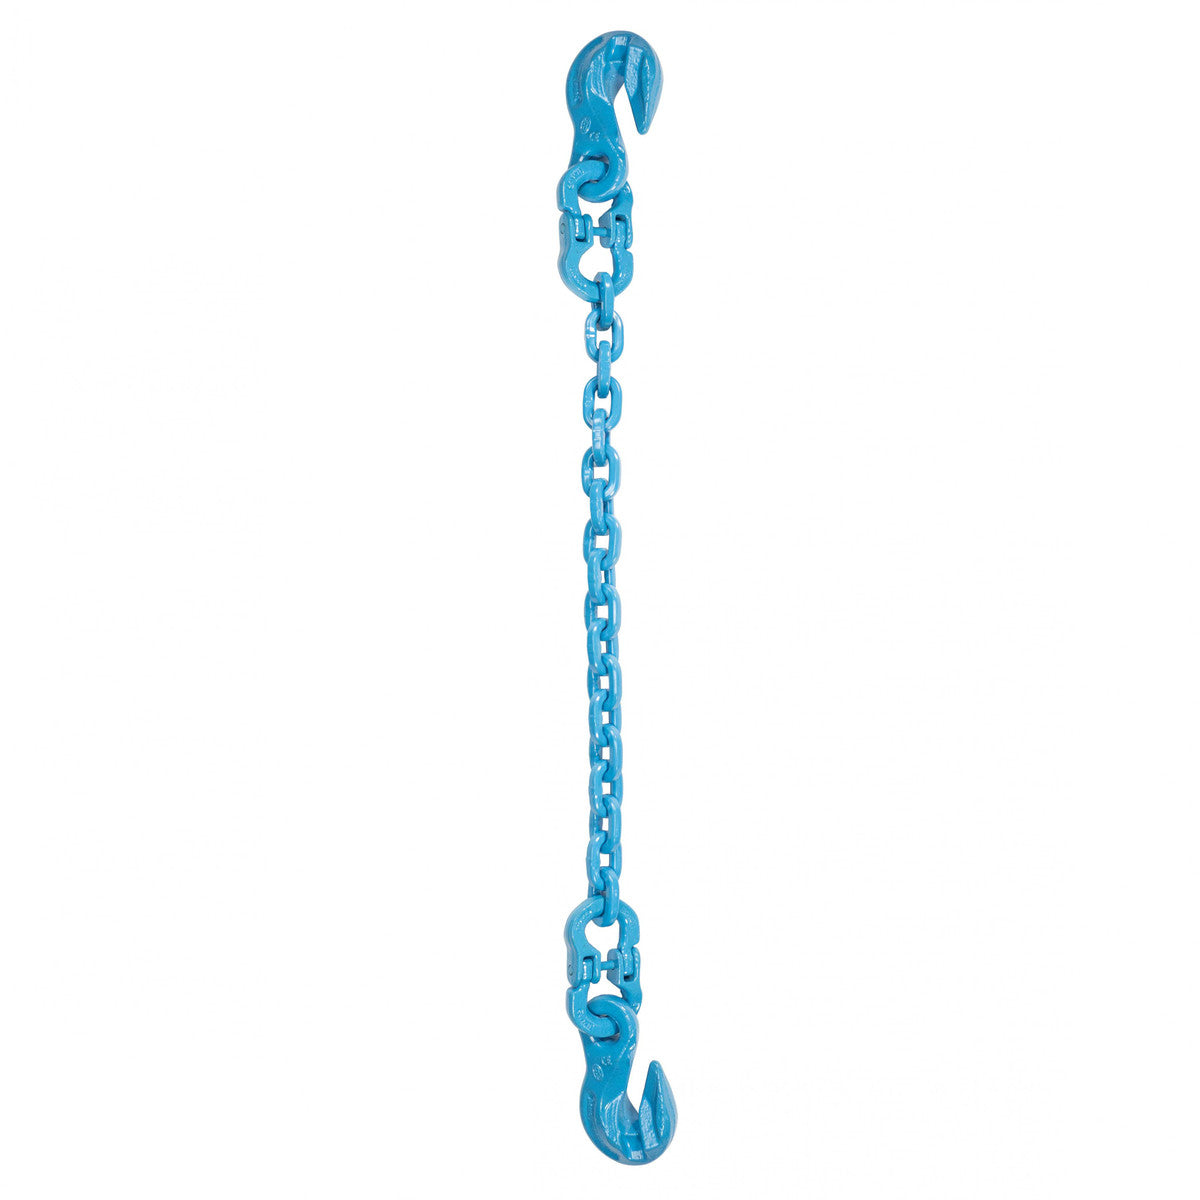 1/2" x 14' - Pewag Single Leg Chain Sling w/ Grab & Grab Hooks - Grade 120